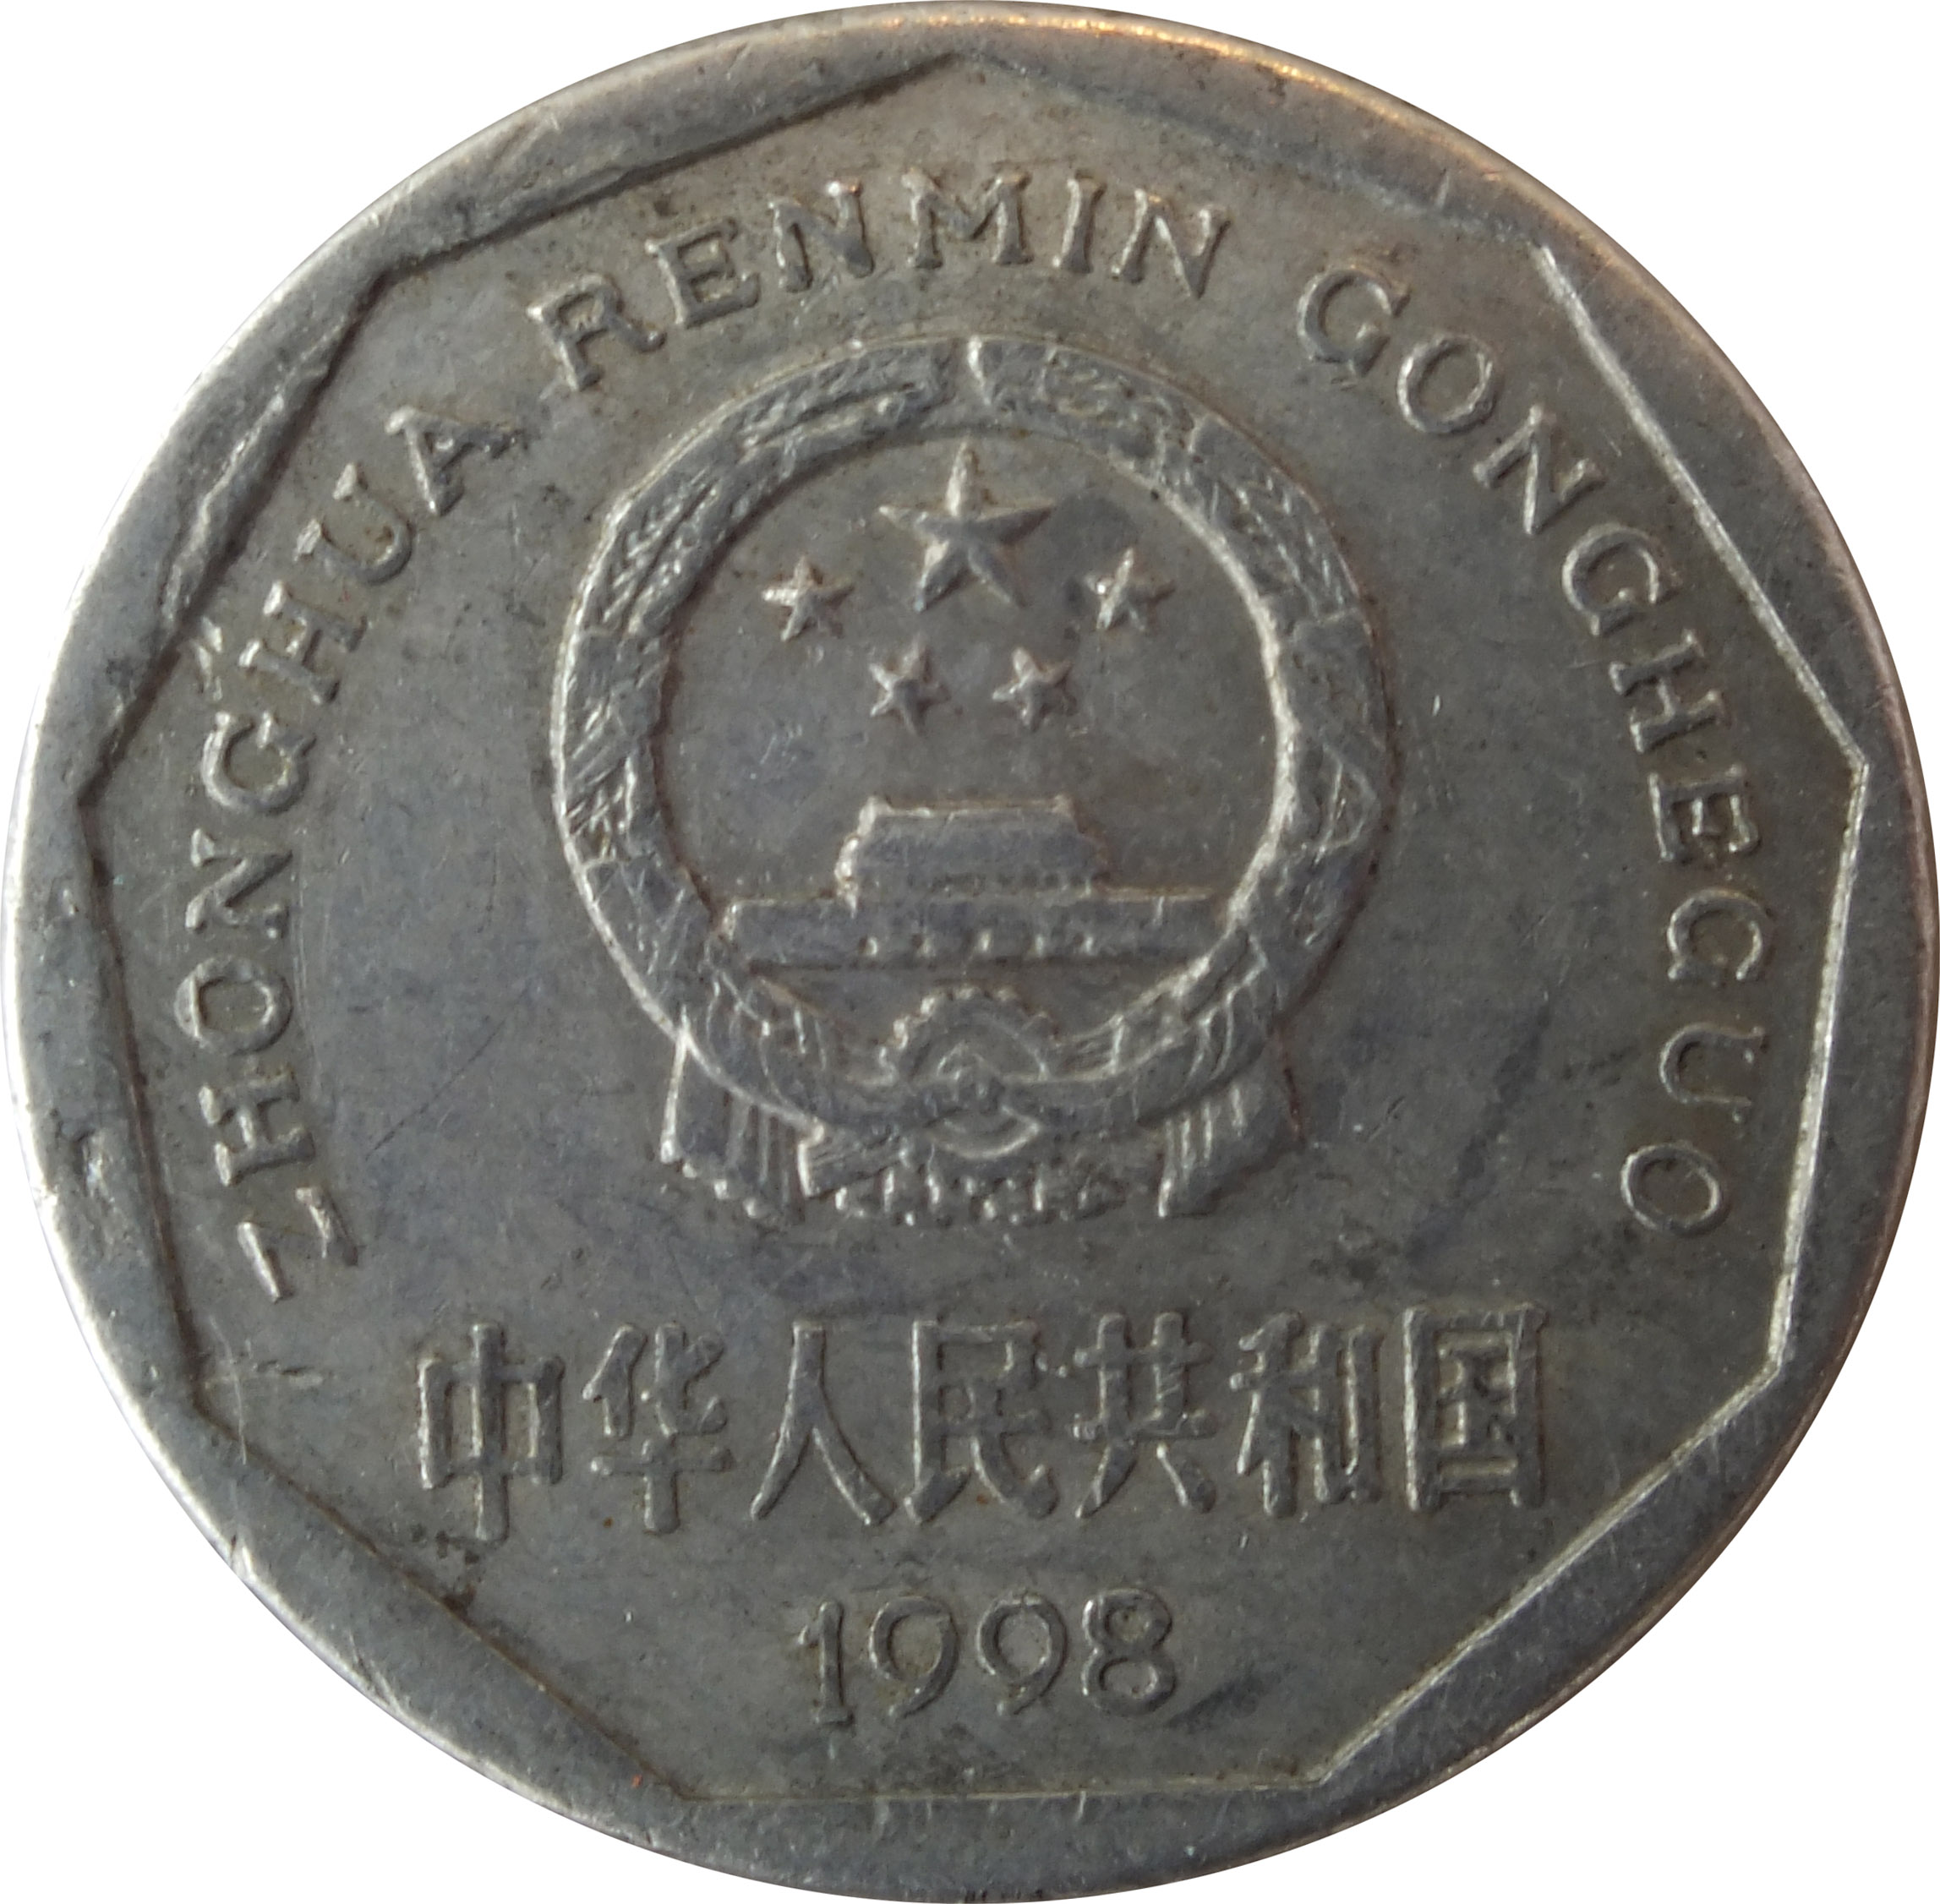 zhonghua renmin gongheguo coin 1993